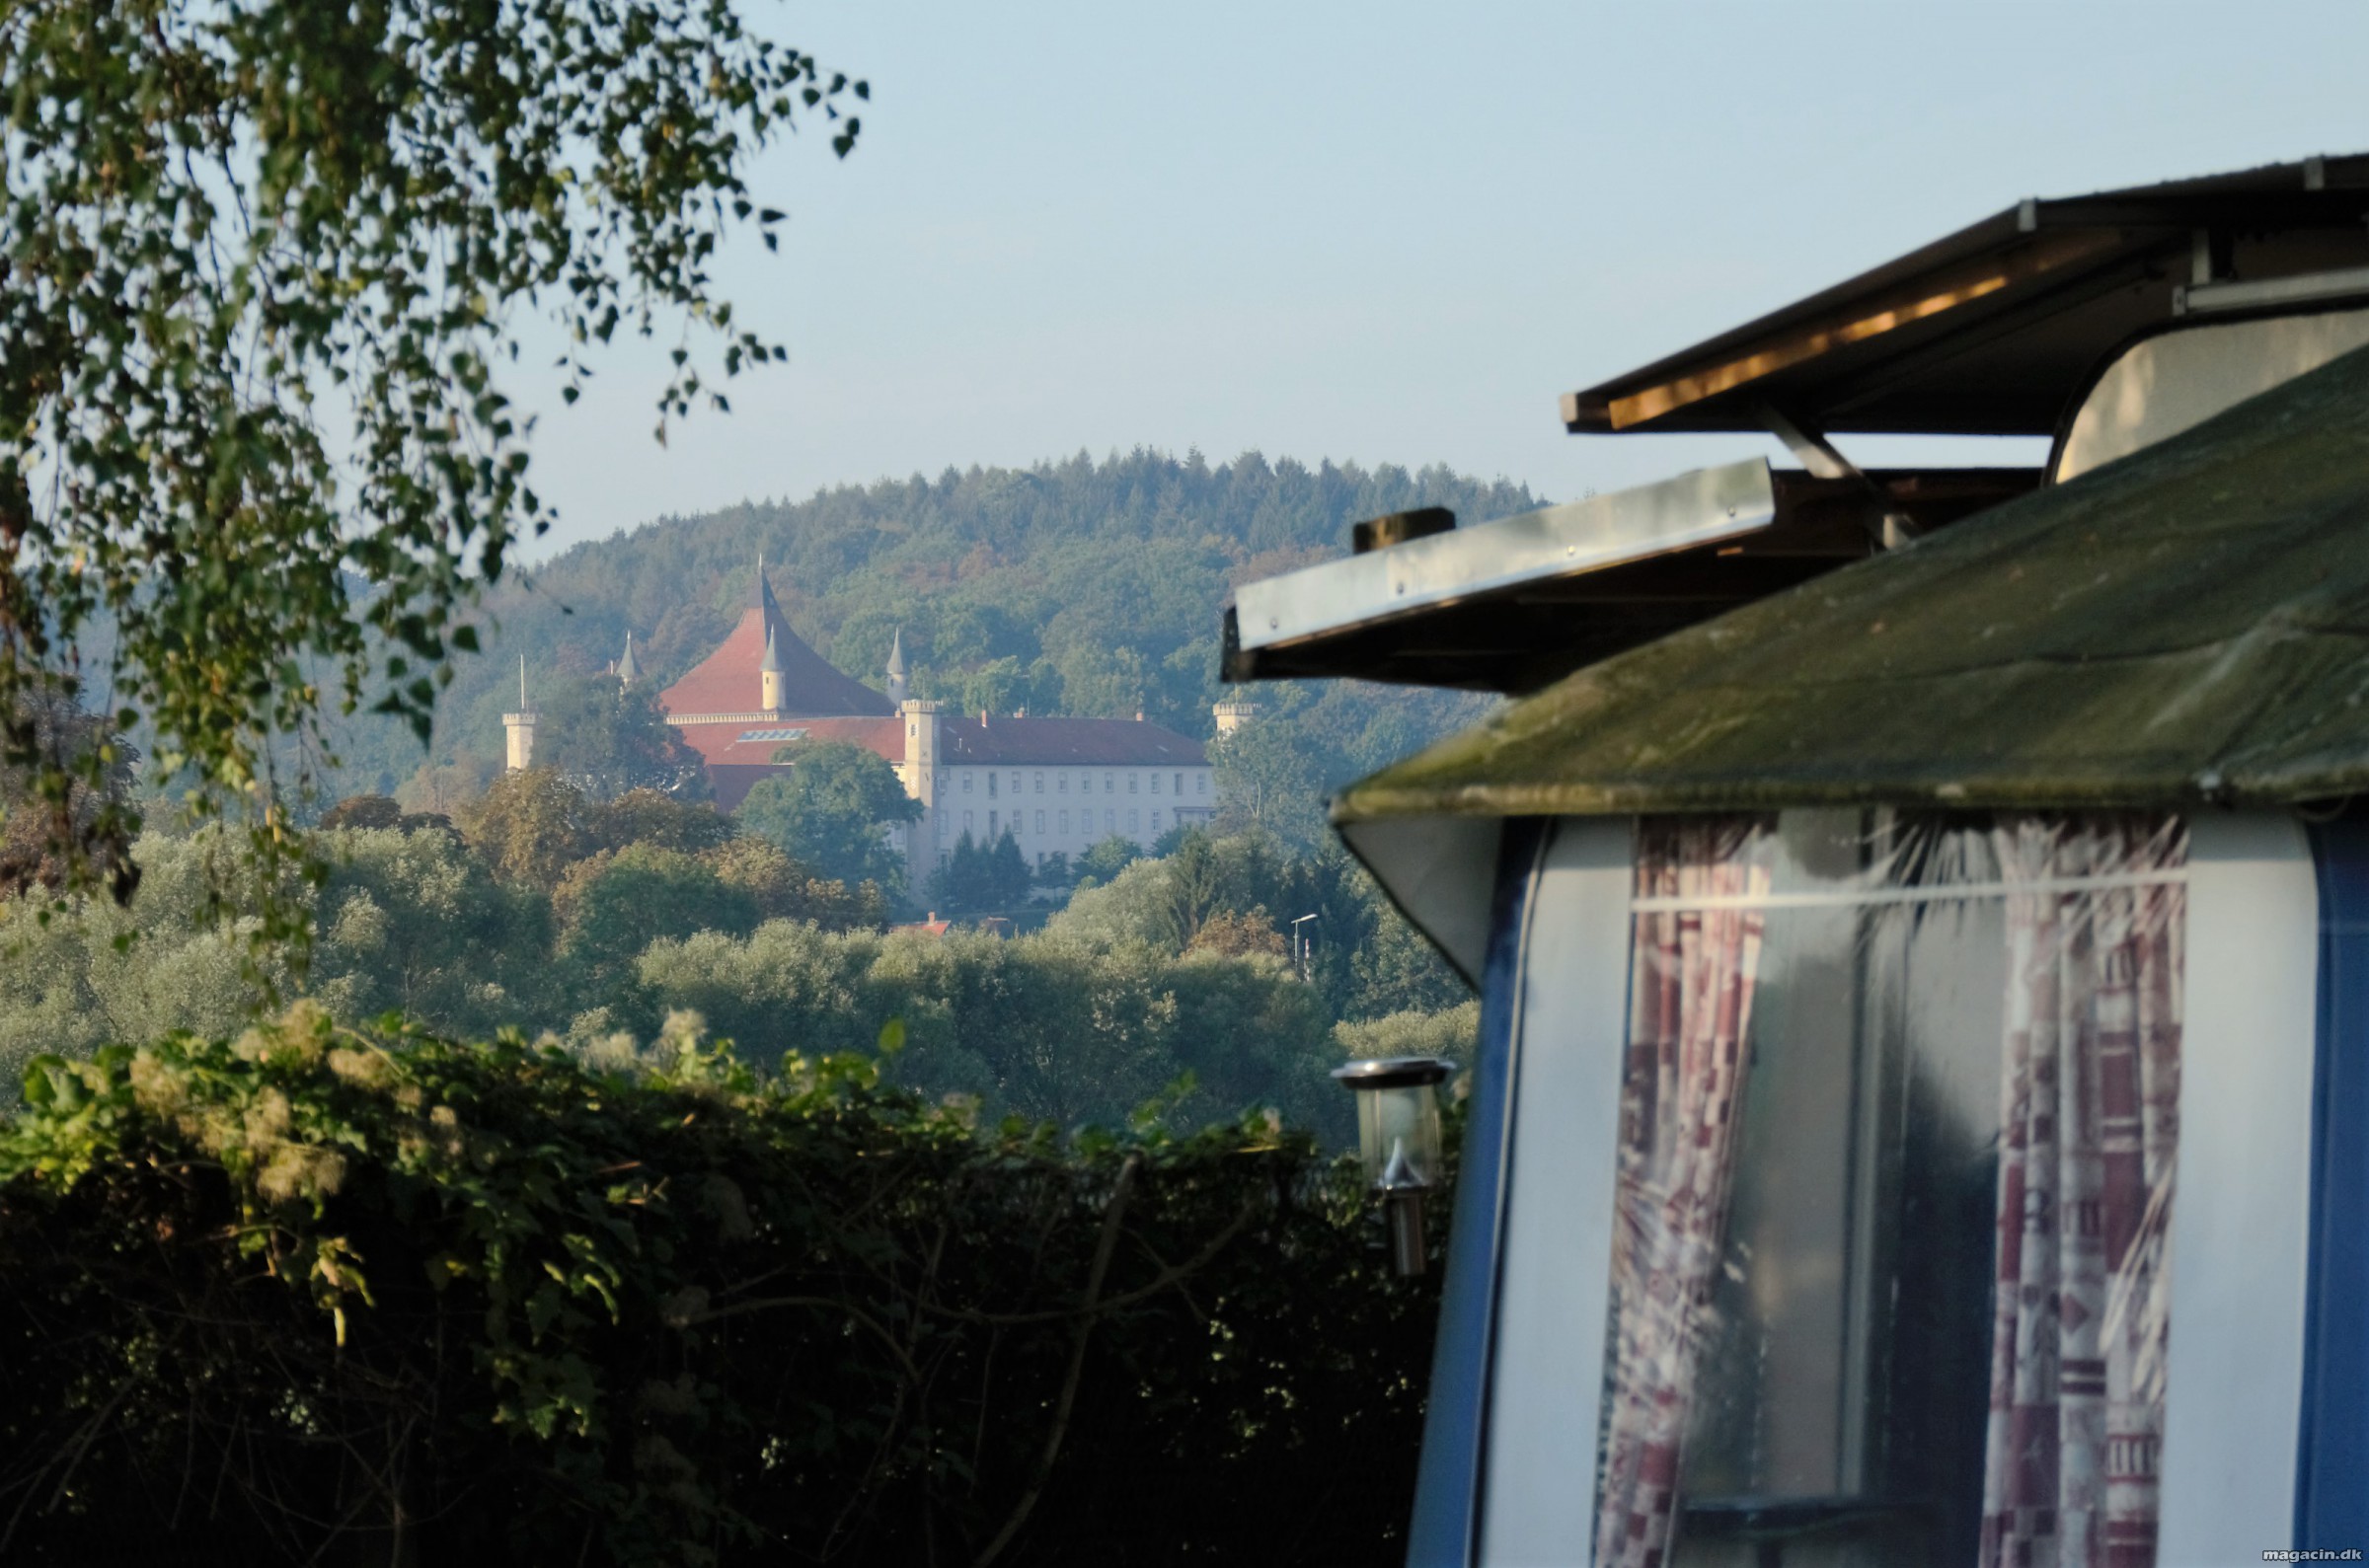 Seecamp Derneburg – et godt stop på turen